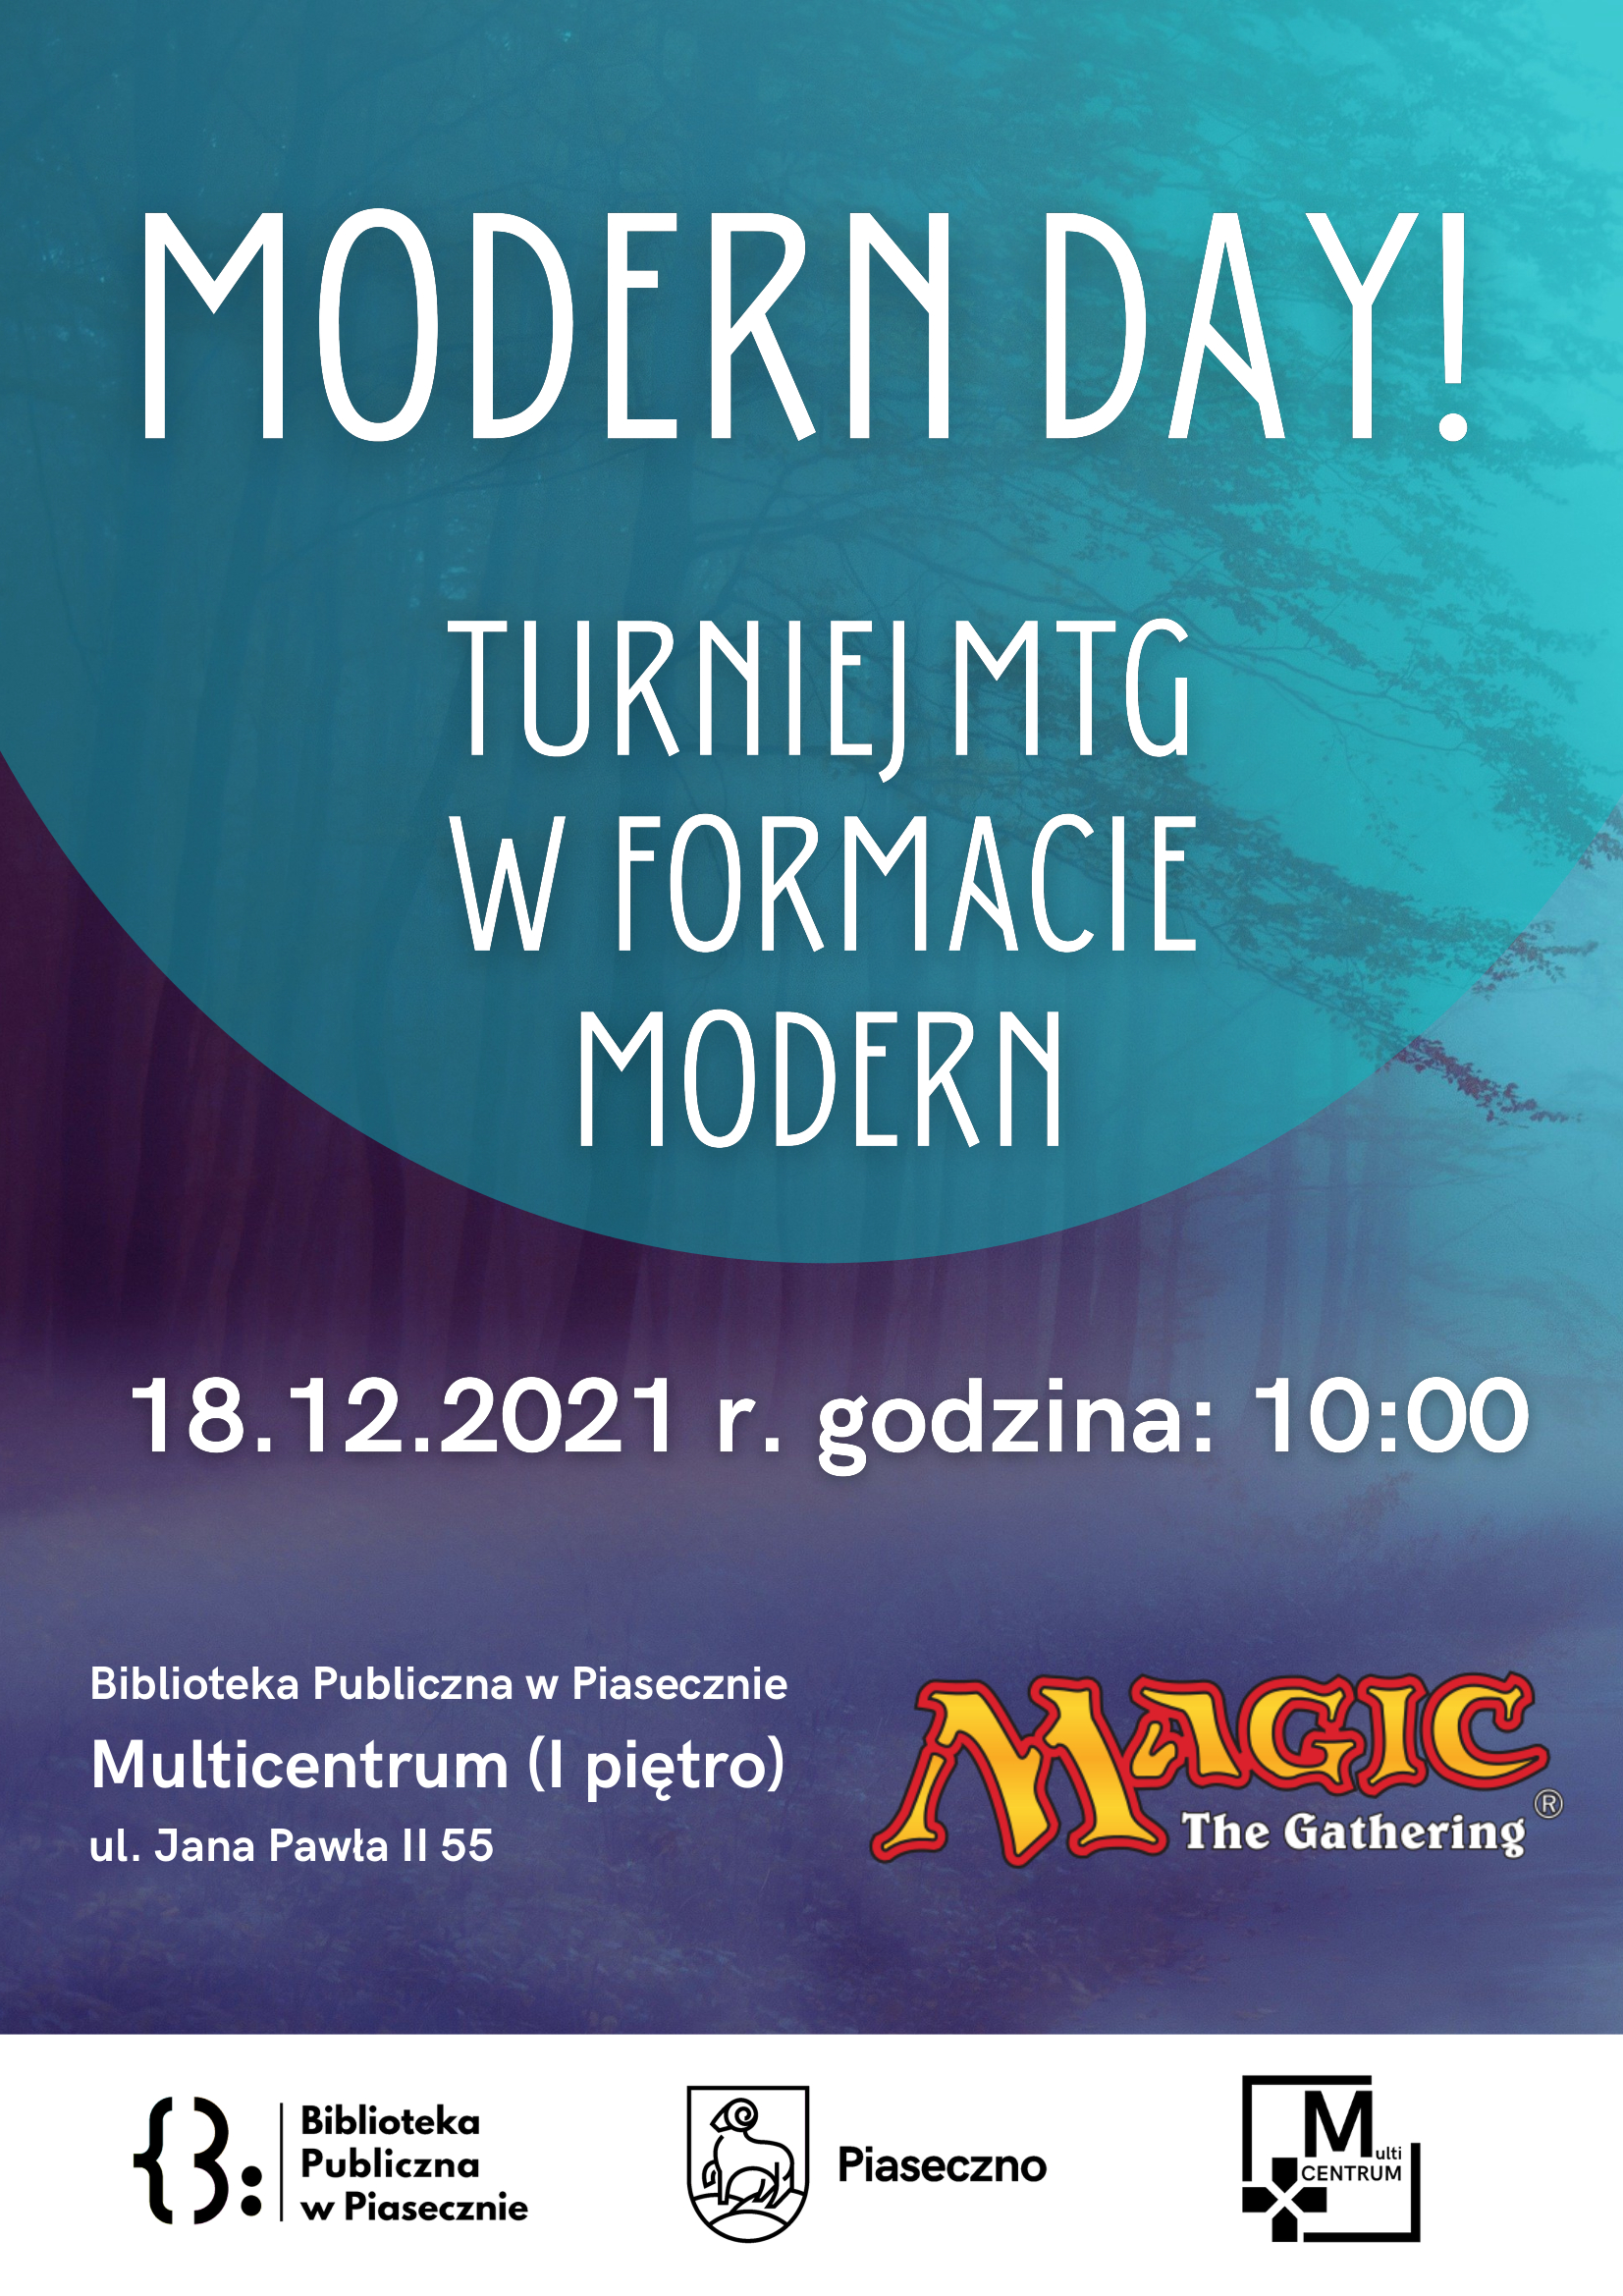 Turniej MTG - Modern Day